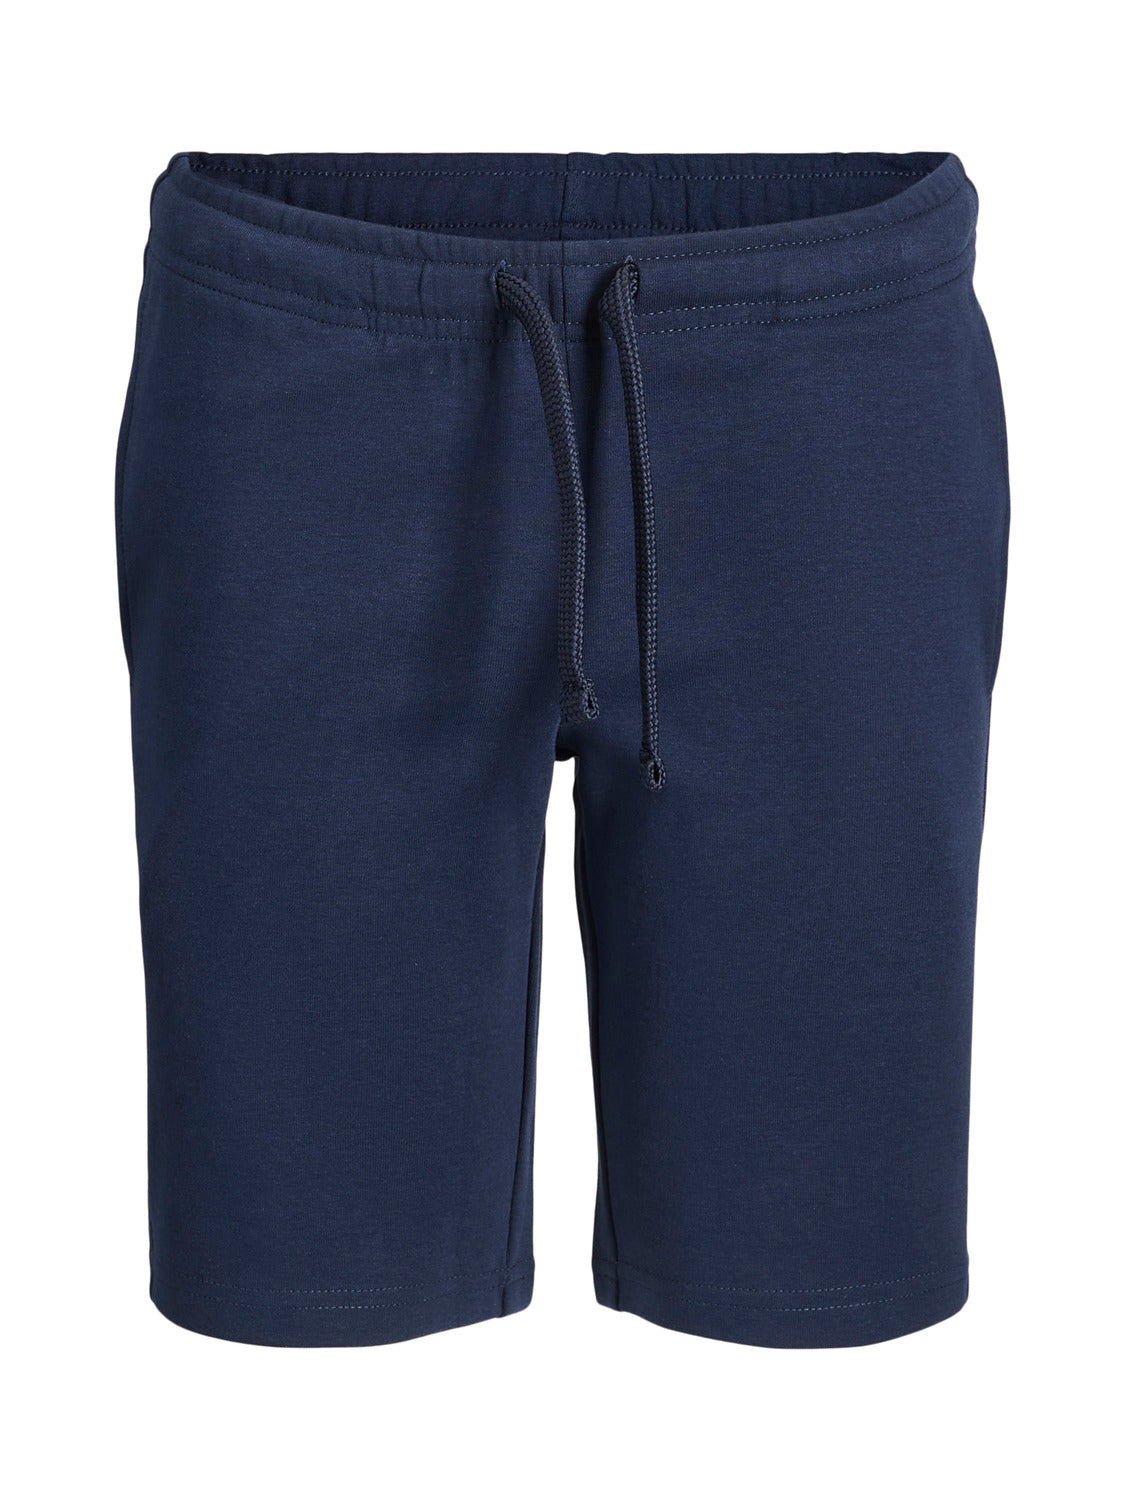 JPSTBASIC Shorts - Navy Blazer